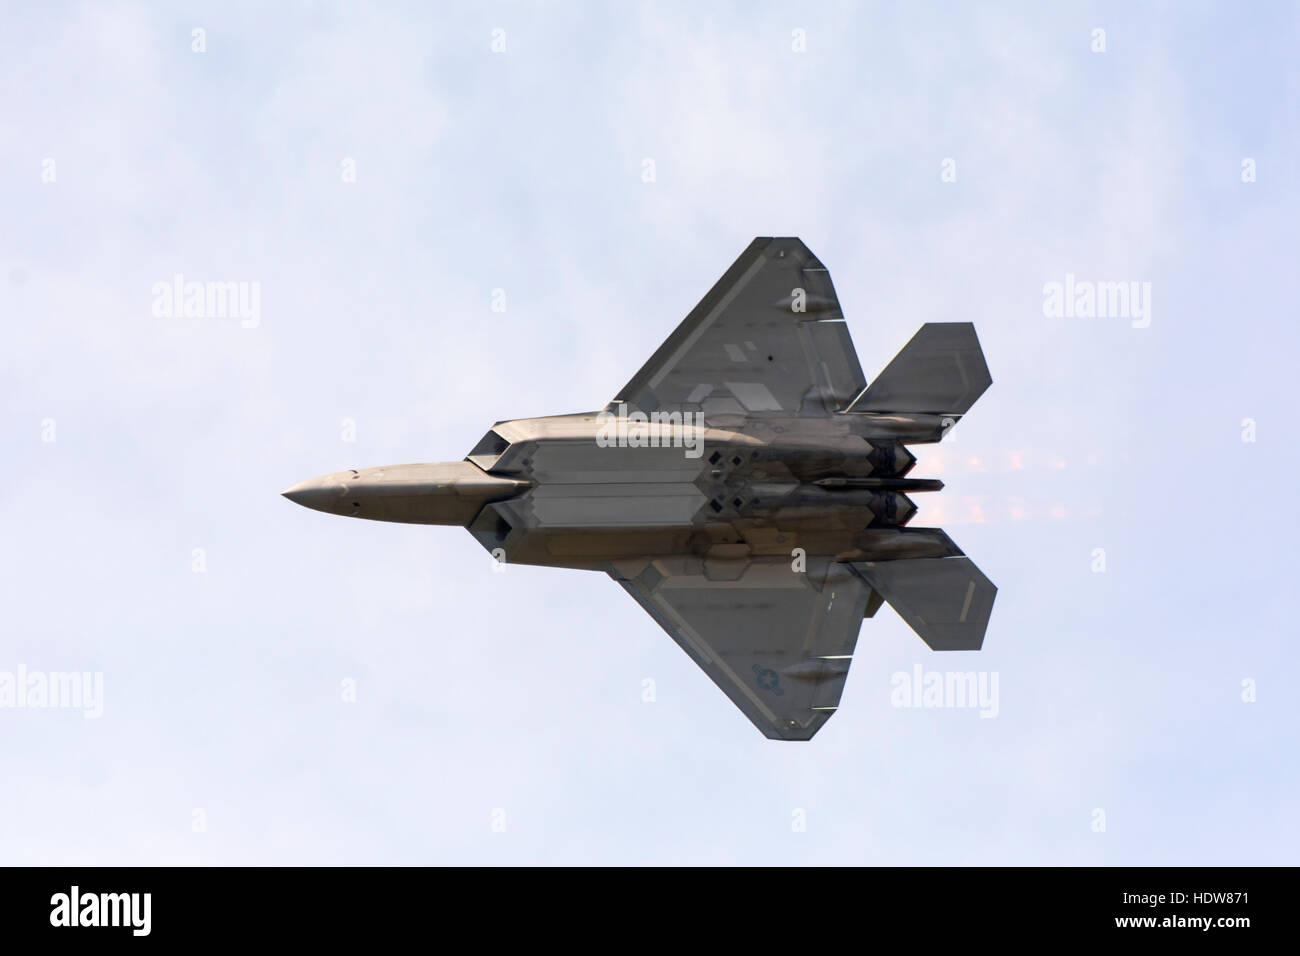 A stealth F 22 Raptor fighter jet in flight showing it's underside; Edmonton, Alberta, Canada Stock Photo